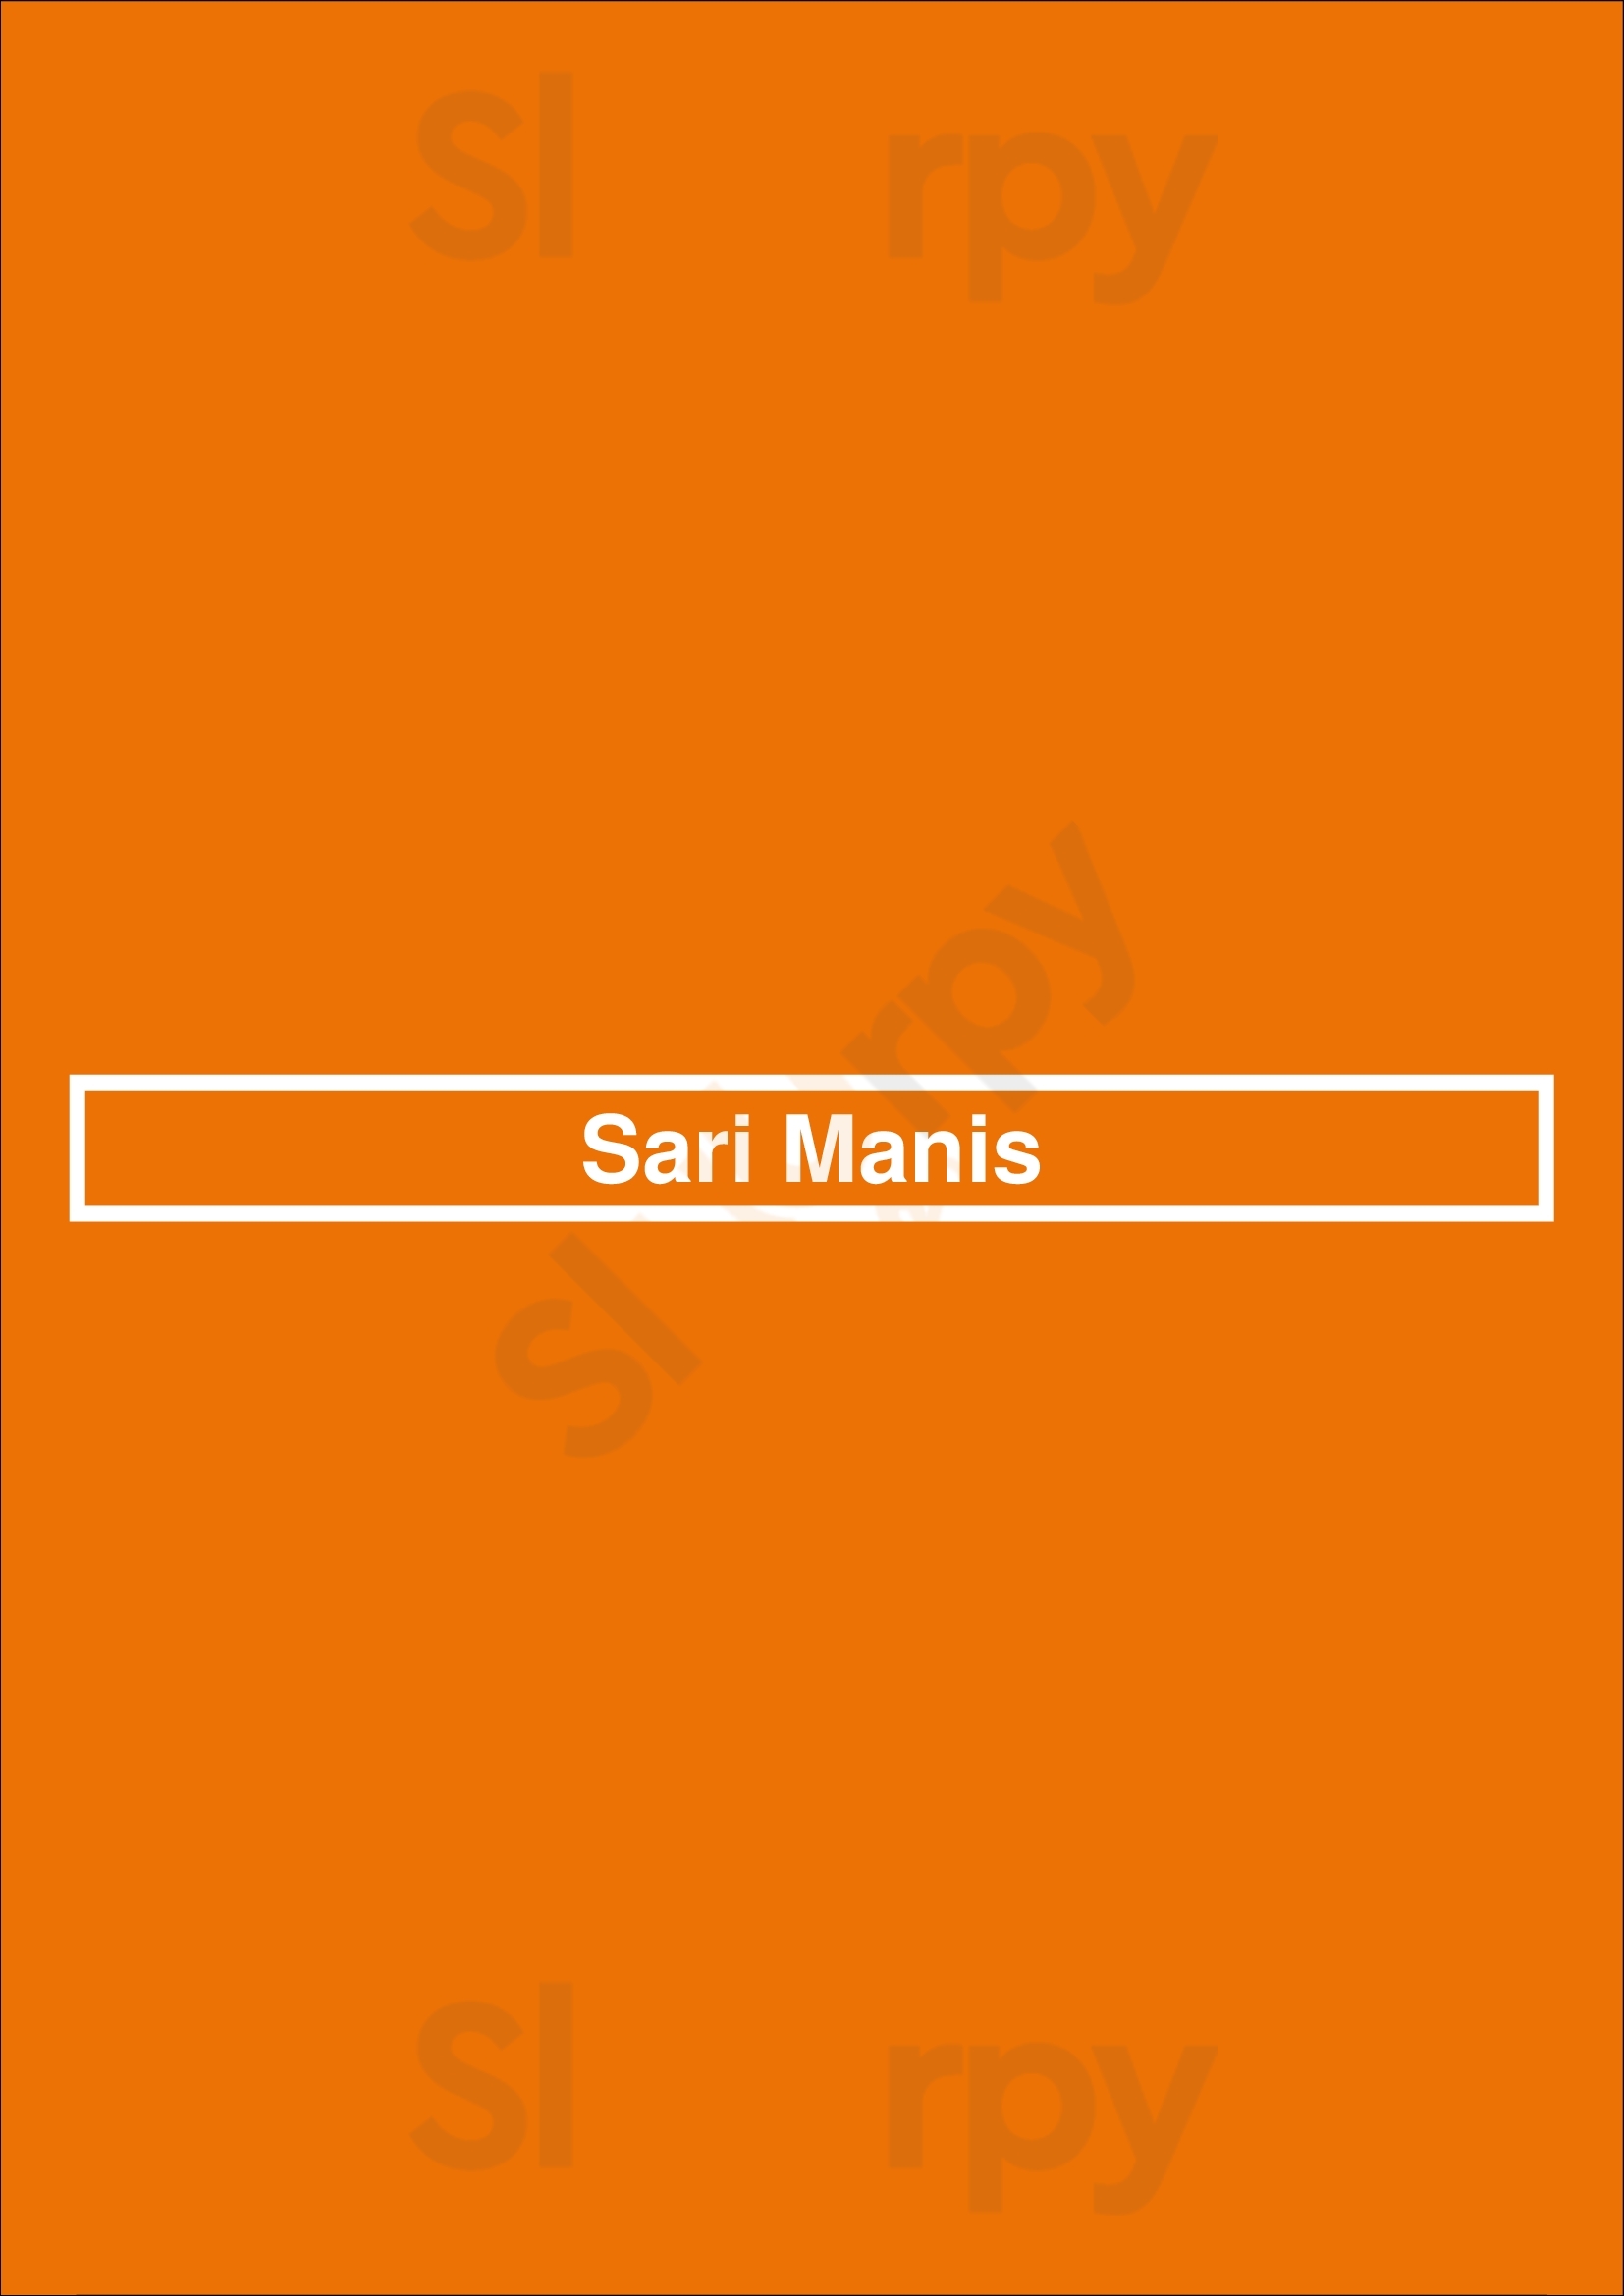 Sari Manis Voorburg Menu - 1